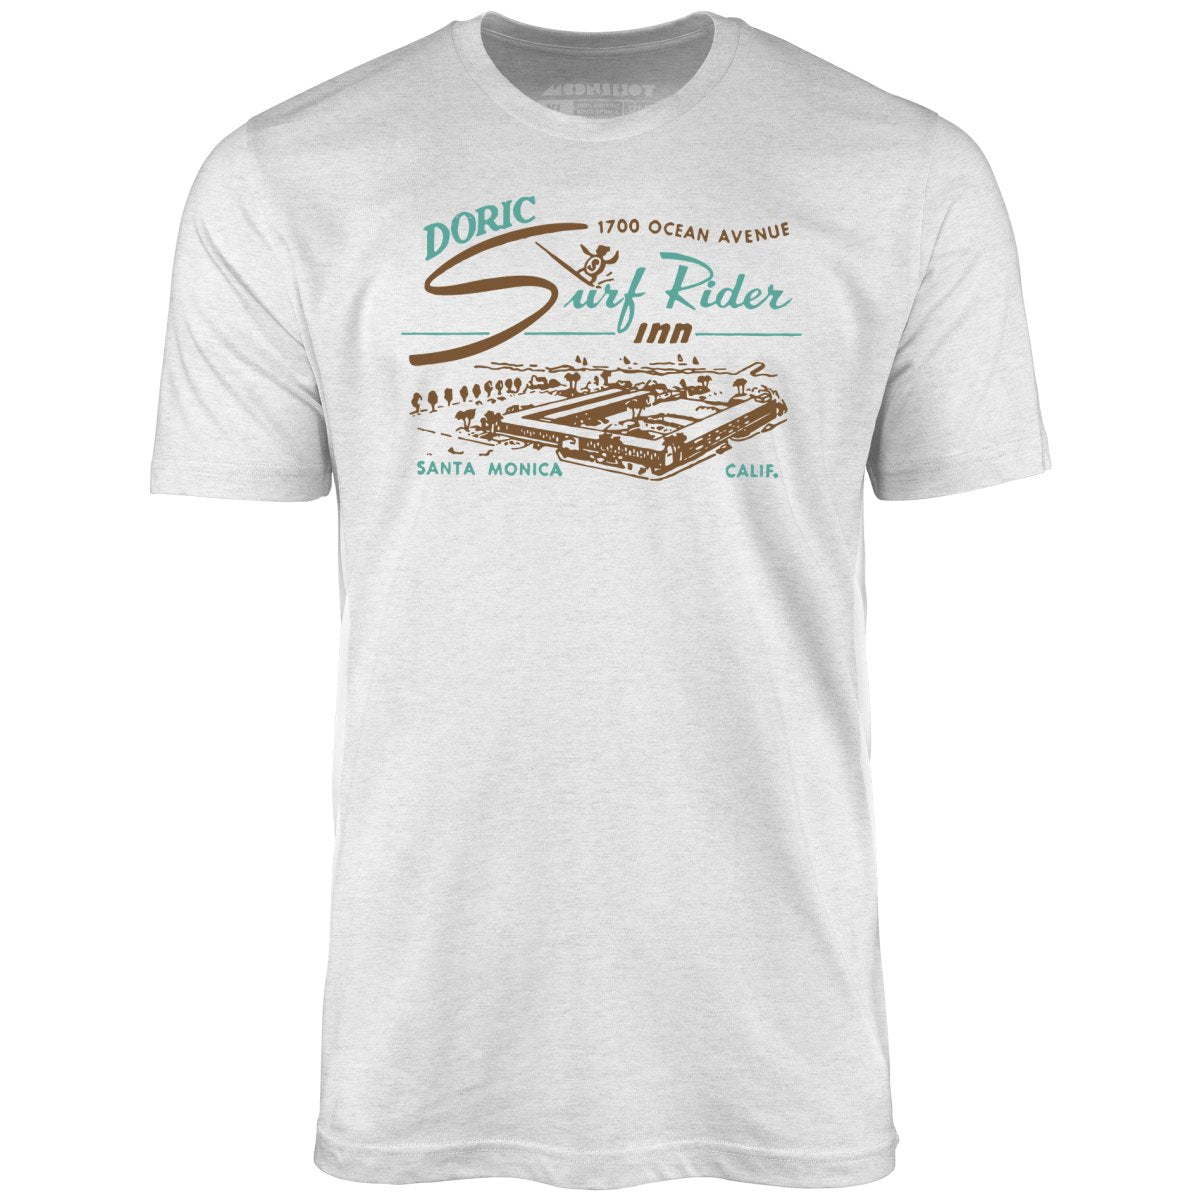 Doric Surf Rider Inn - Santa Monica, CA - Vintage Hotel - Unisex T-Shirt